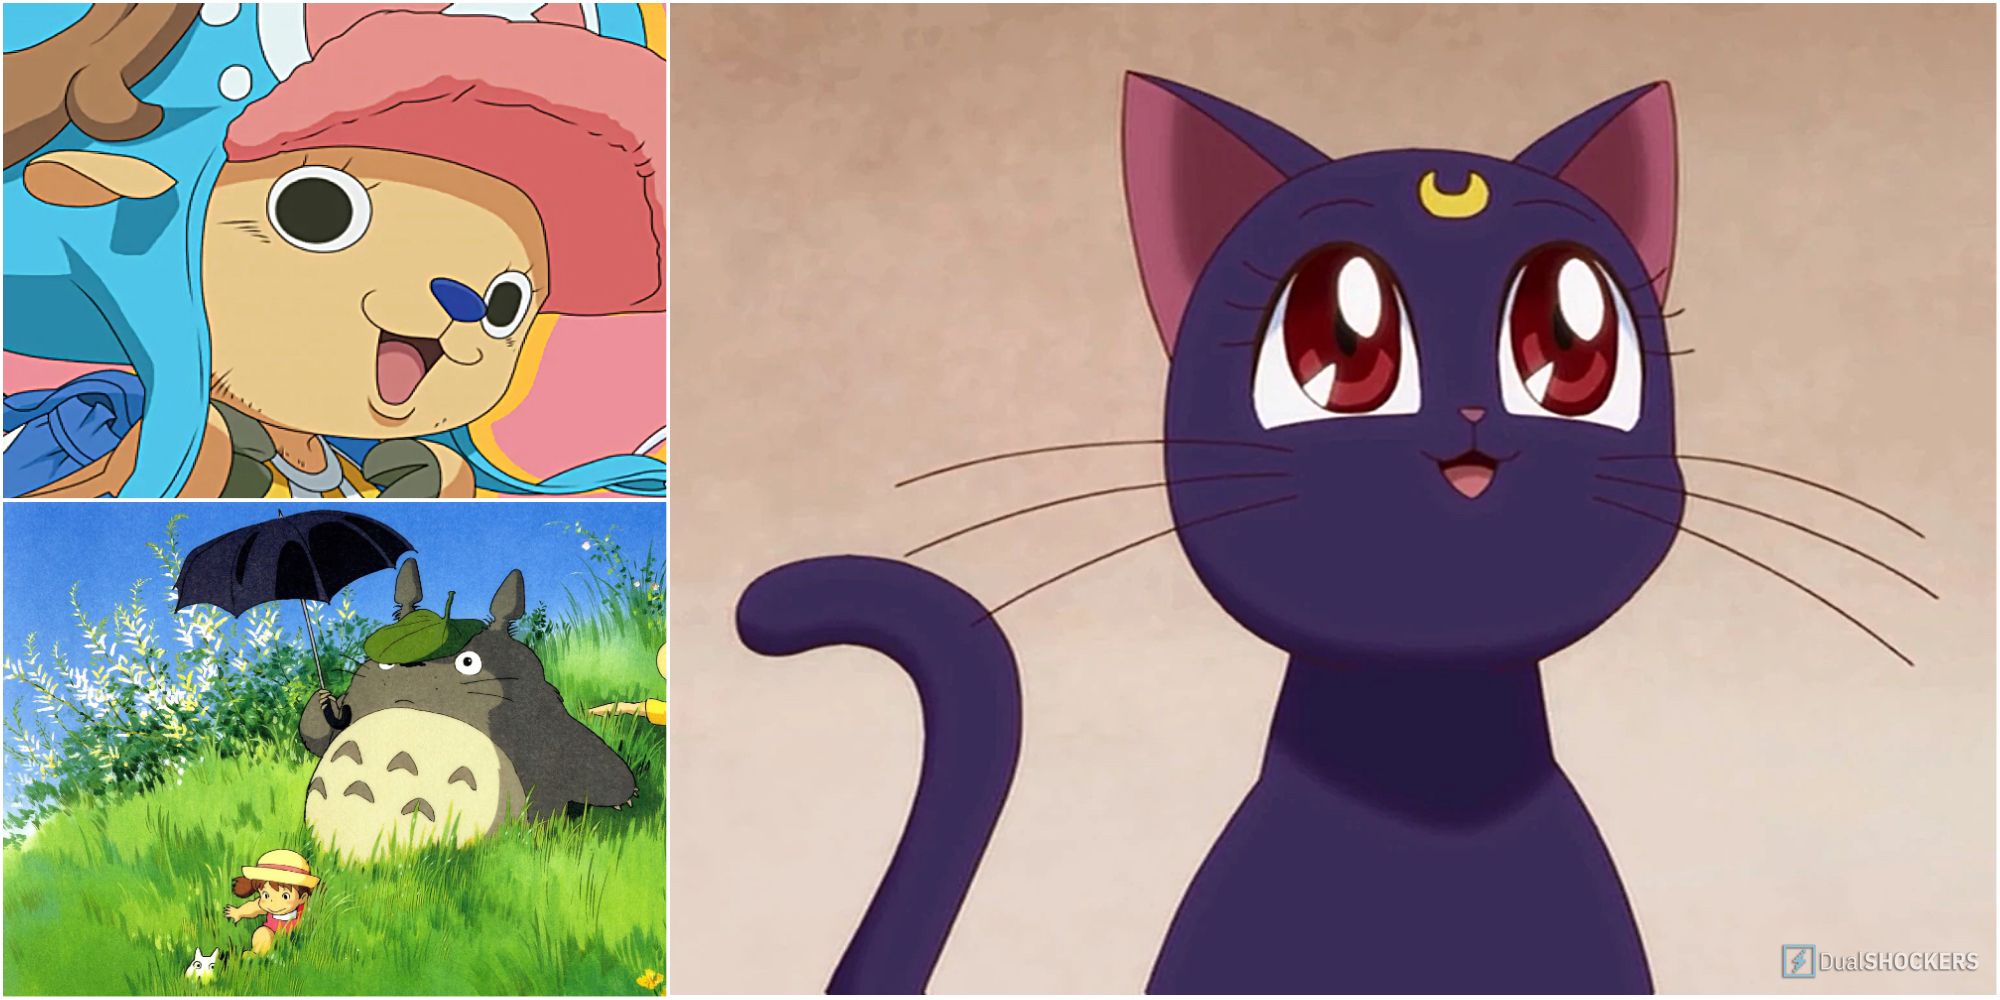 æ¯Žæ—¥ã‚¢ãƒ‹ãƒ¡å¤¢ » My top 10 anime animal mascots